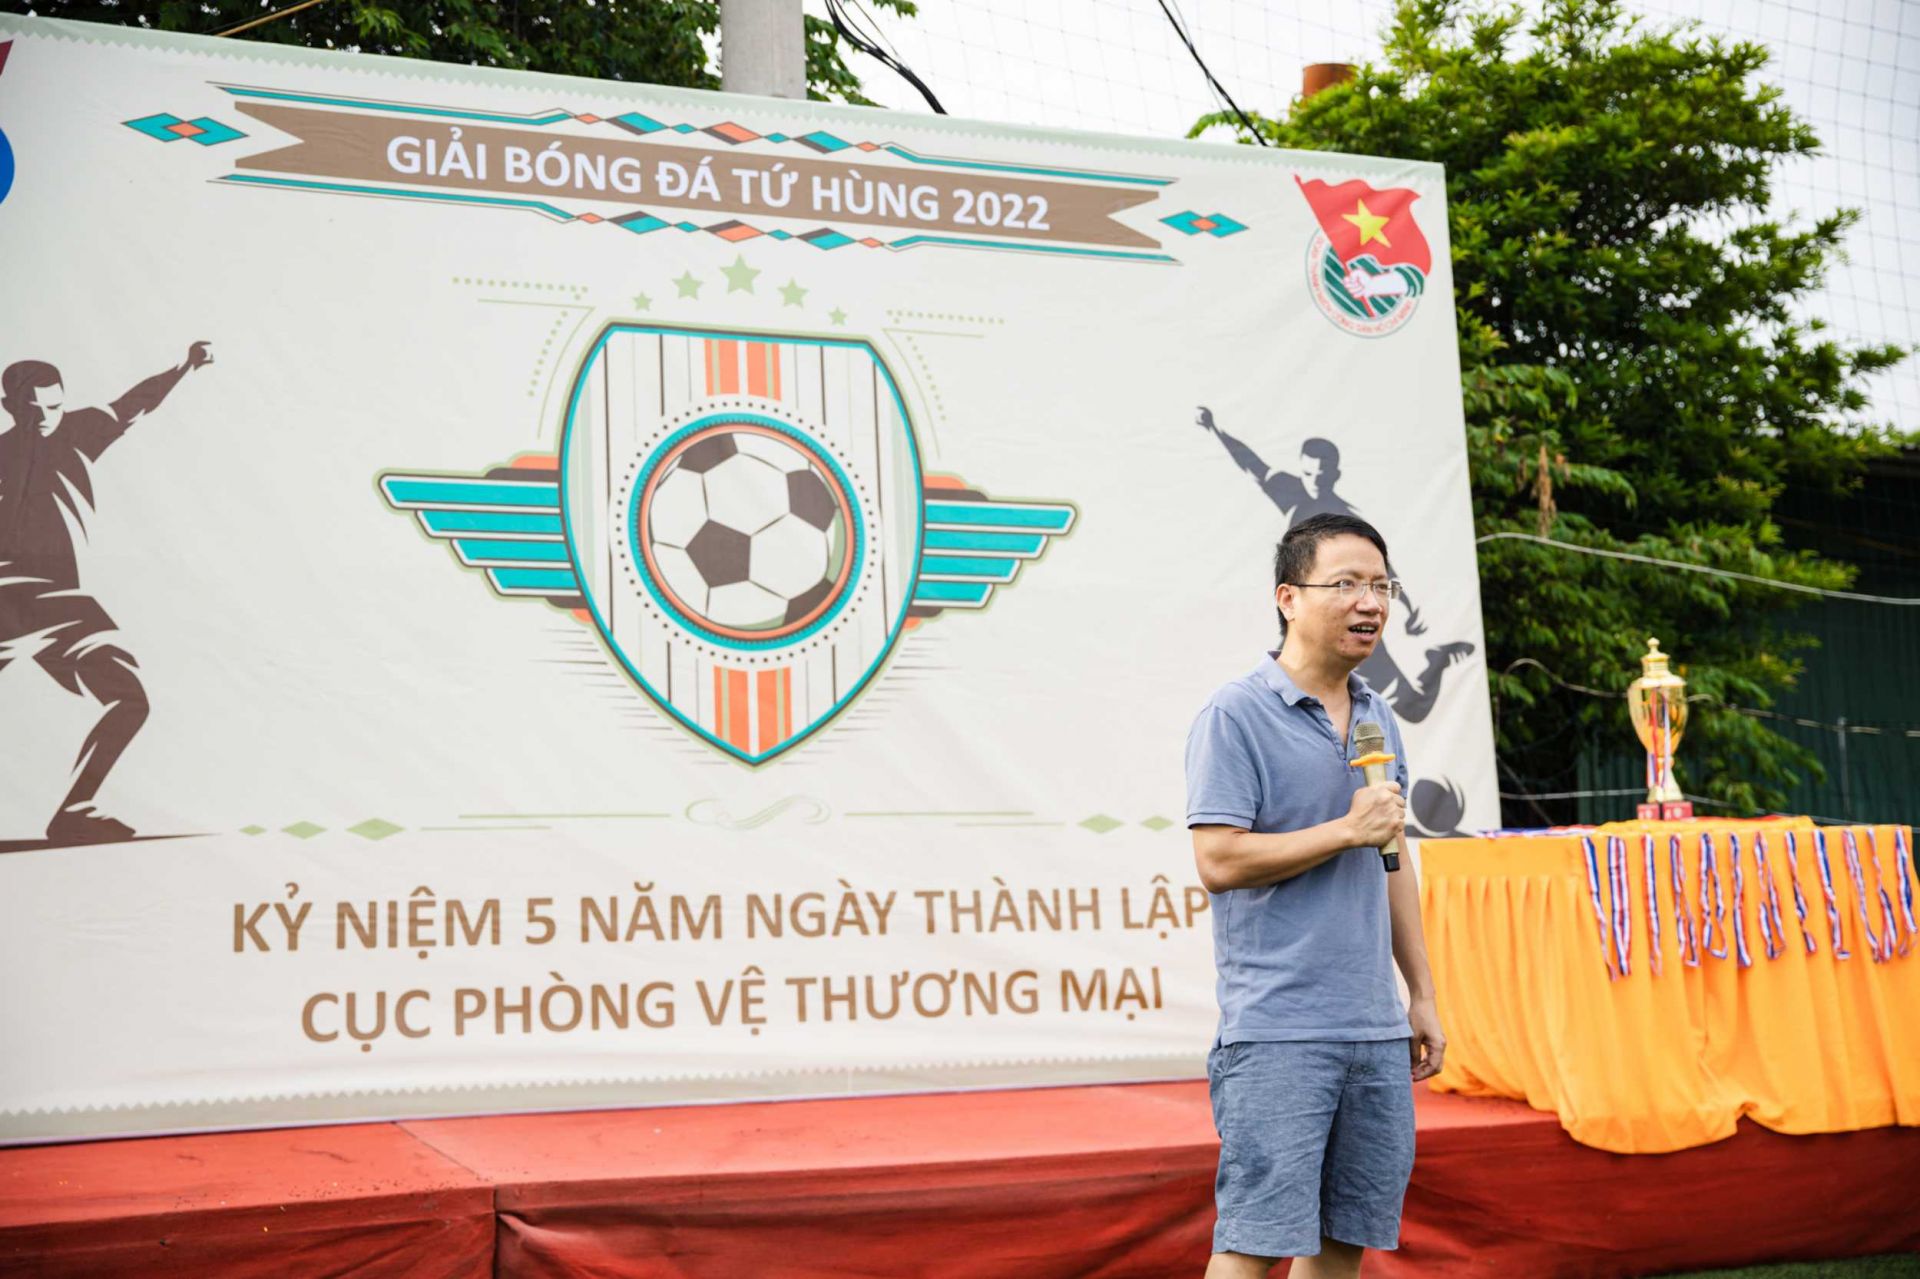 Ông Lê Triệu Dũng - Cục trưởng Cục Phòng vệ thương mại phát biểu khai mạc giải bóng